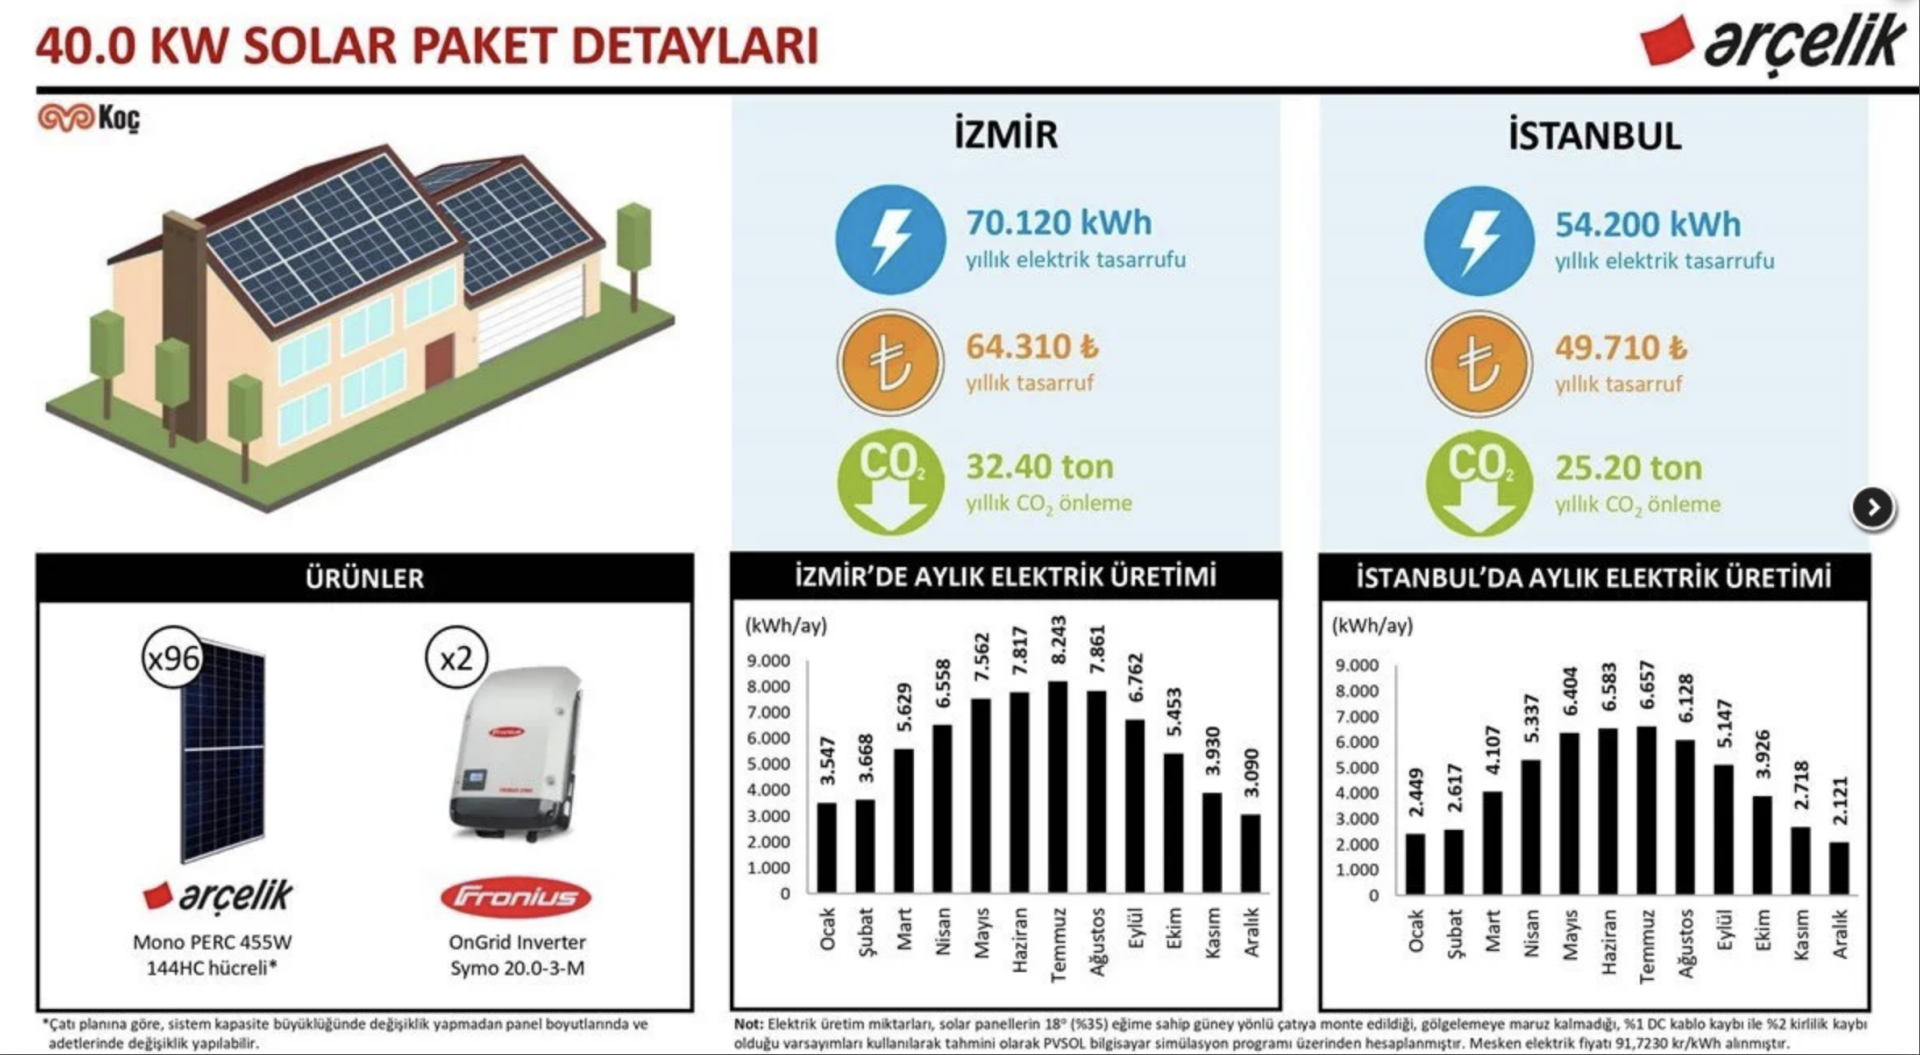 40.0 kW Solar Paket ve Yapı Kredi Leasing